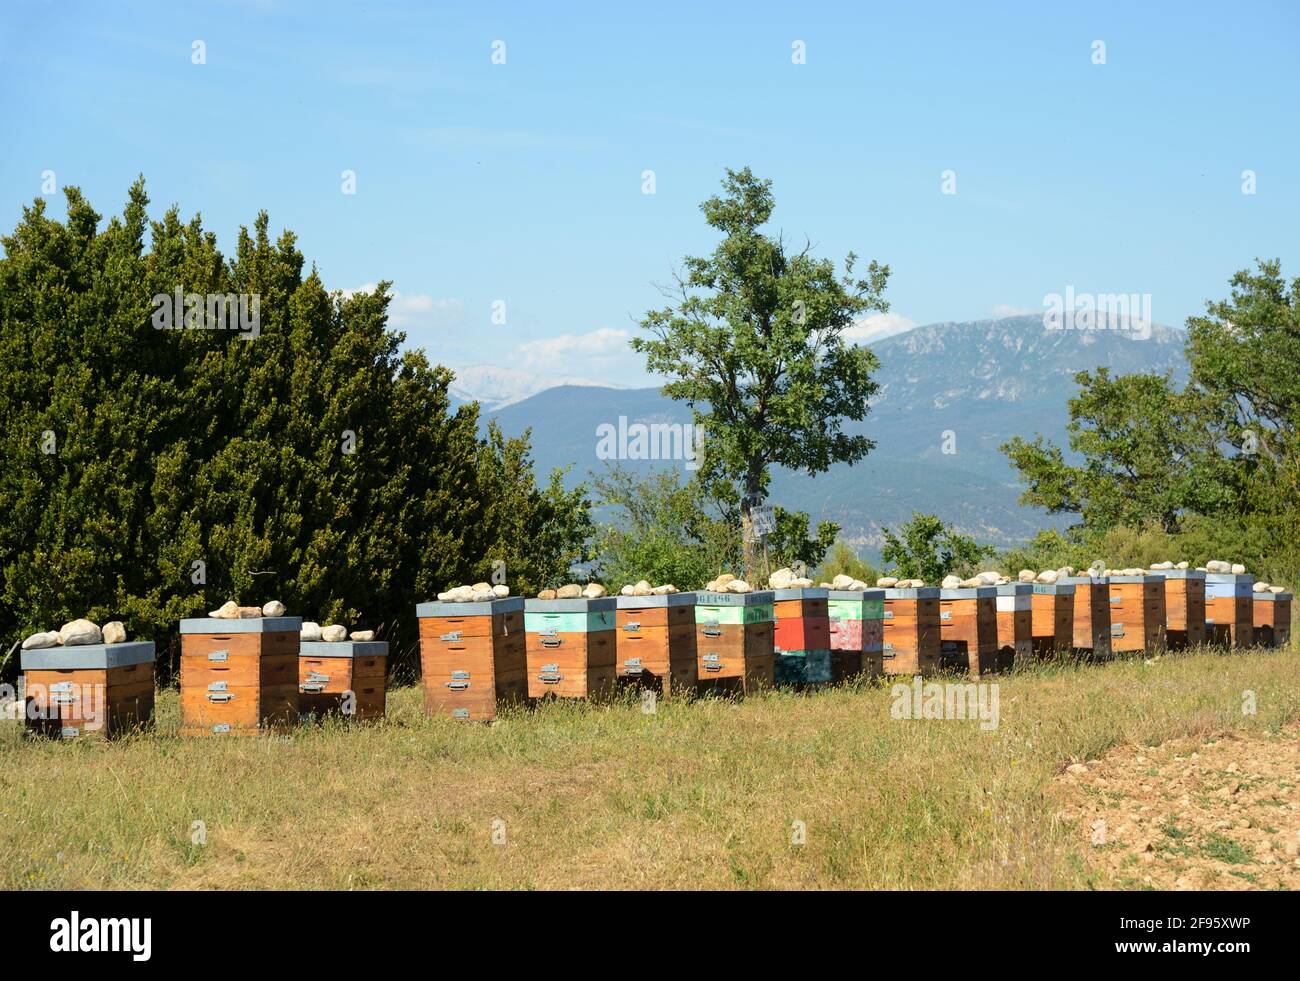 Bienenzucht, Bienenzucht oder Bienenstock-Reihe zur Herstellung von Lavendelhonig auf dem Plateau de Valensole Alpes-de-Haute-Provence Provence Frankreich Stockfoto